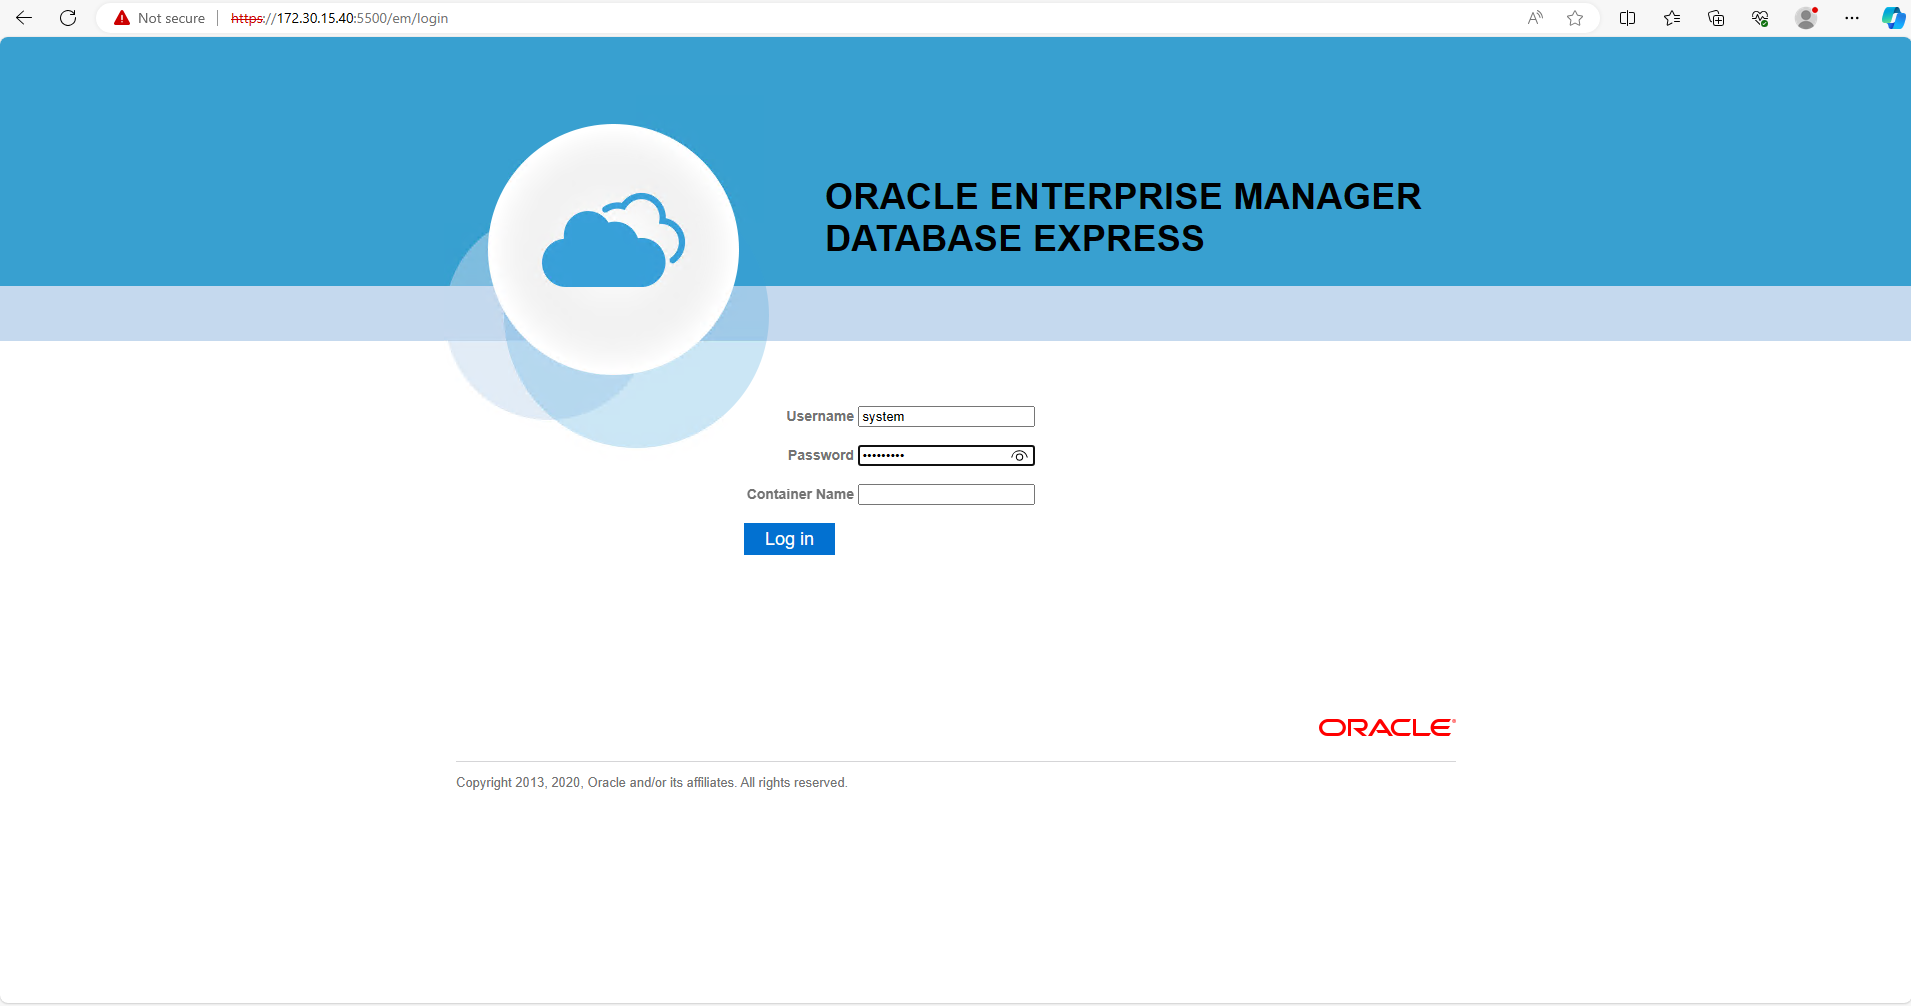 이 이미지는 Oracle Enterprise Manager Express의 로그인 화면을 제공합니다